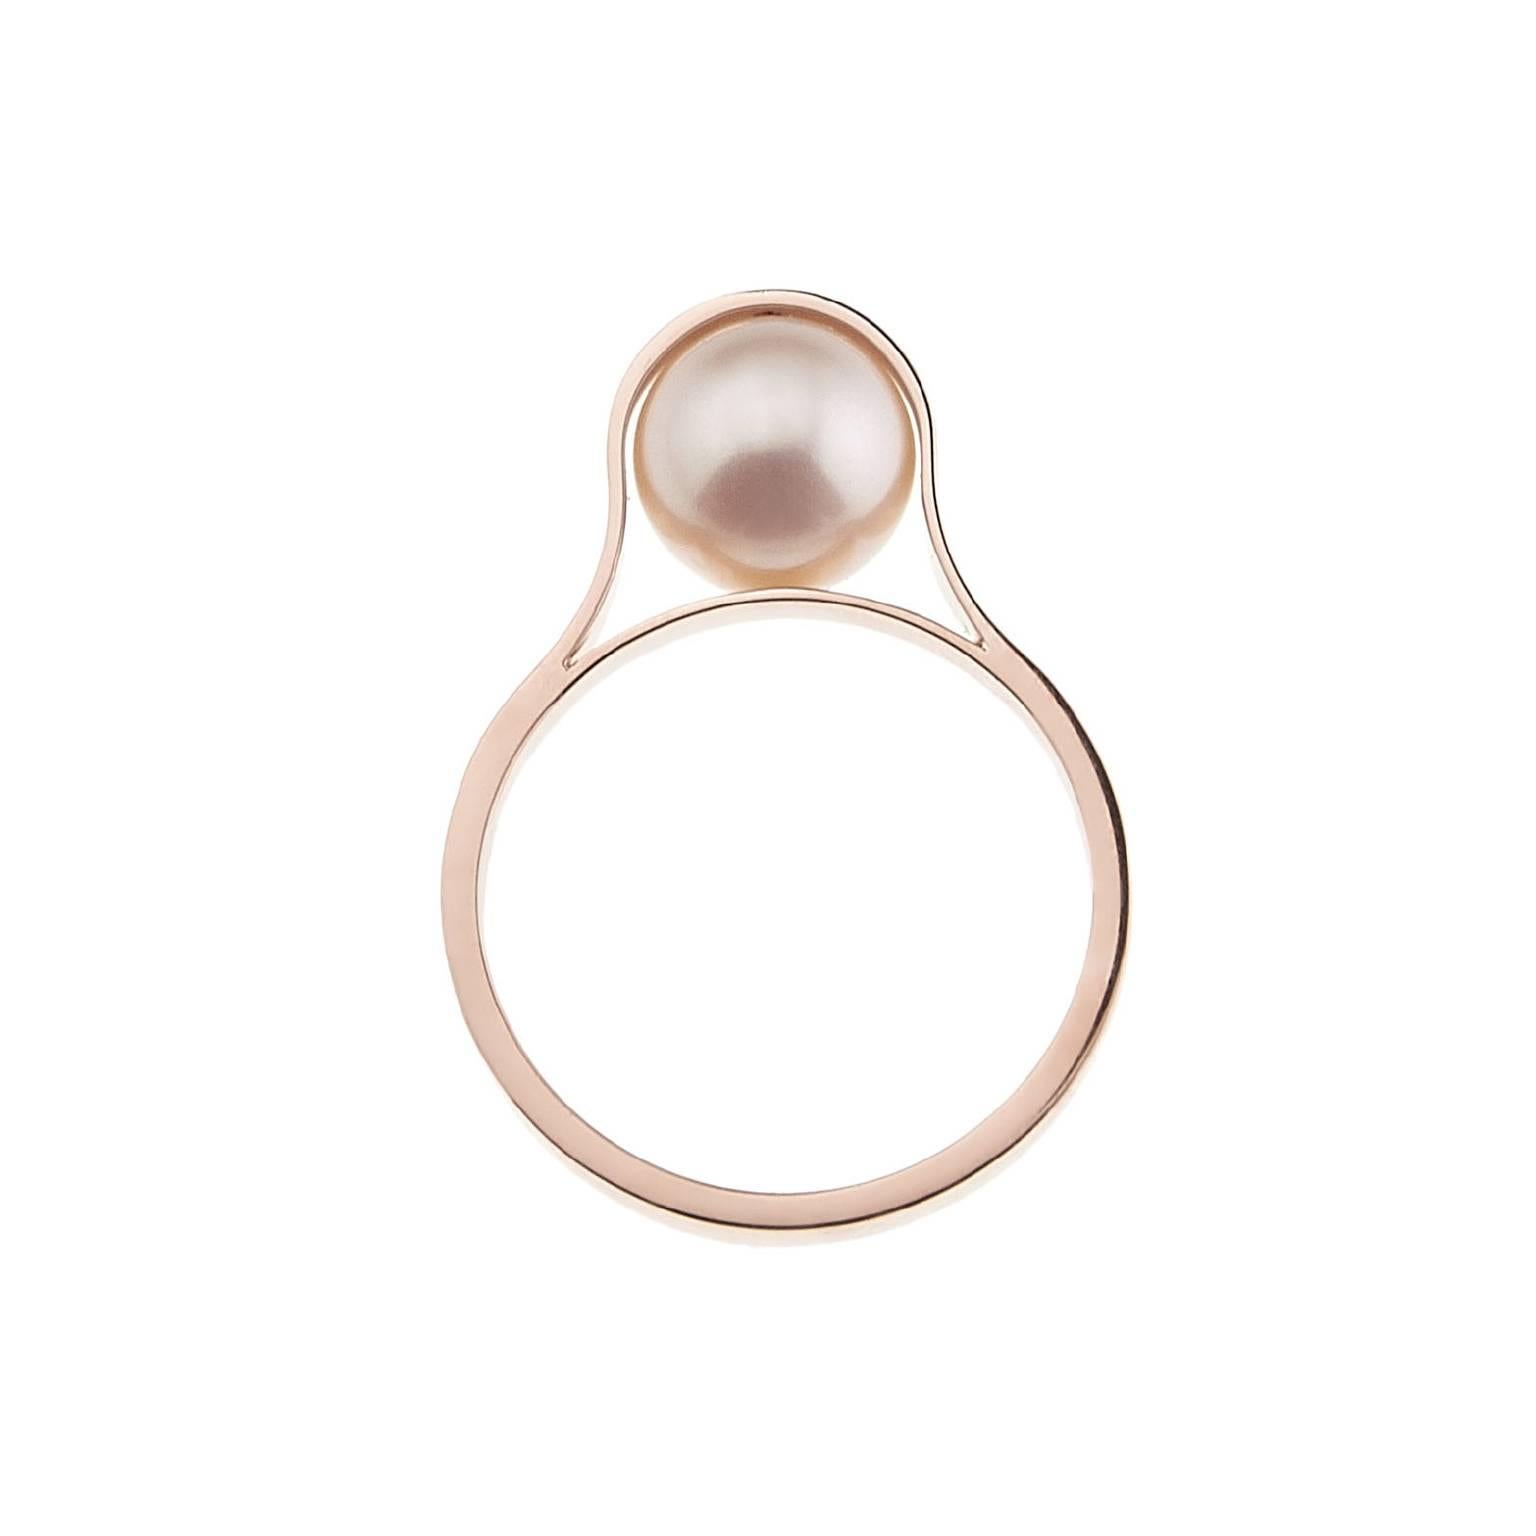 Réalisée à la main dans l'atelier de Nathalie Jean, la bague Nakkar rend hommage à la perle, symbole de divinité, de royauté et de luxe qui fascine et inspire depuis la nuit des temps. Un simple anneau en or 18 carats entoure la sphère précieuse